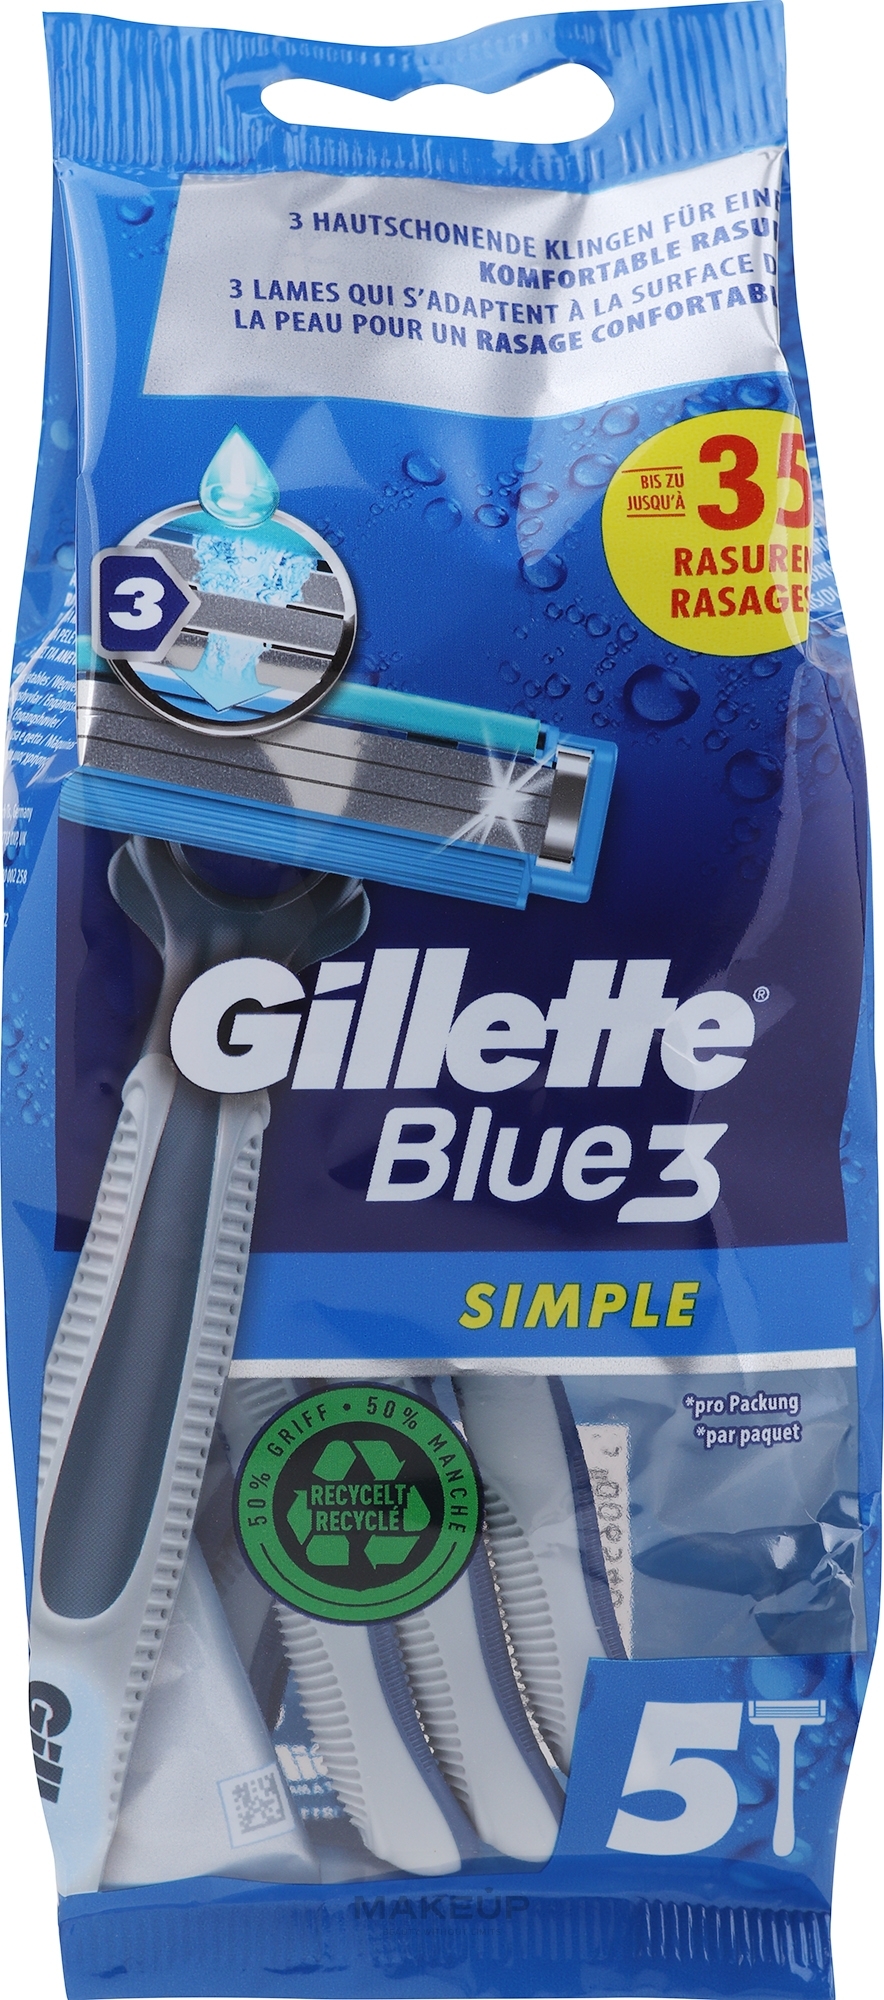 Zestaw jednorazowych maszynek do golenia - Gillette Blue3 Simple Disposable Razors 4+1 — Zdjęcie 5 szt.